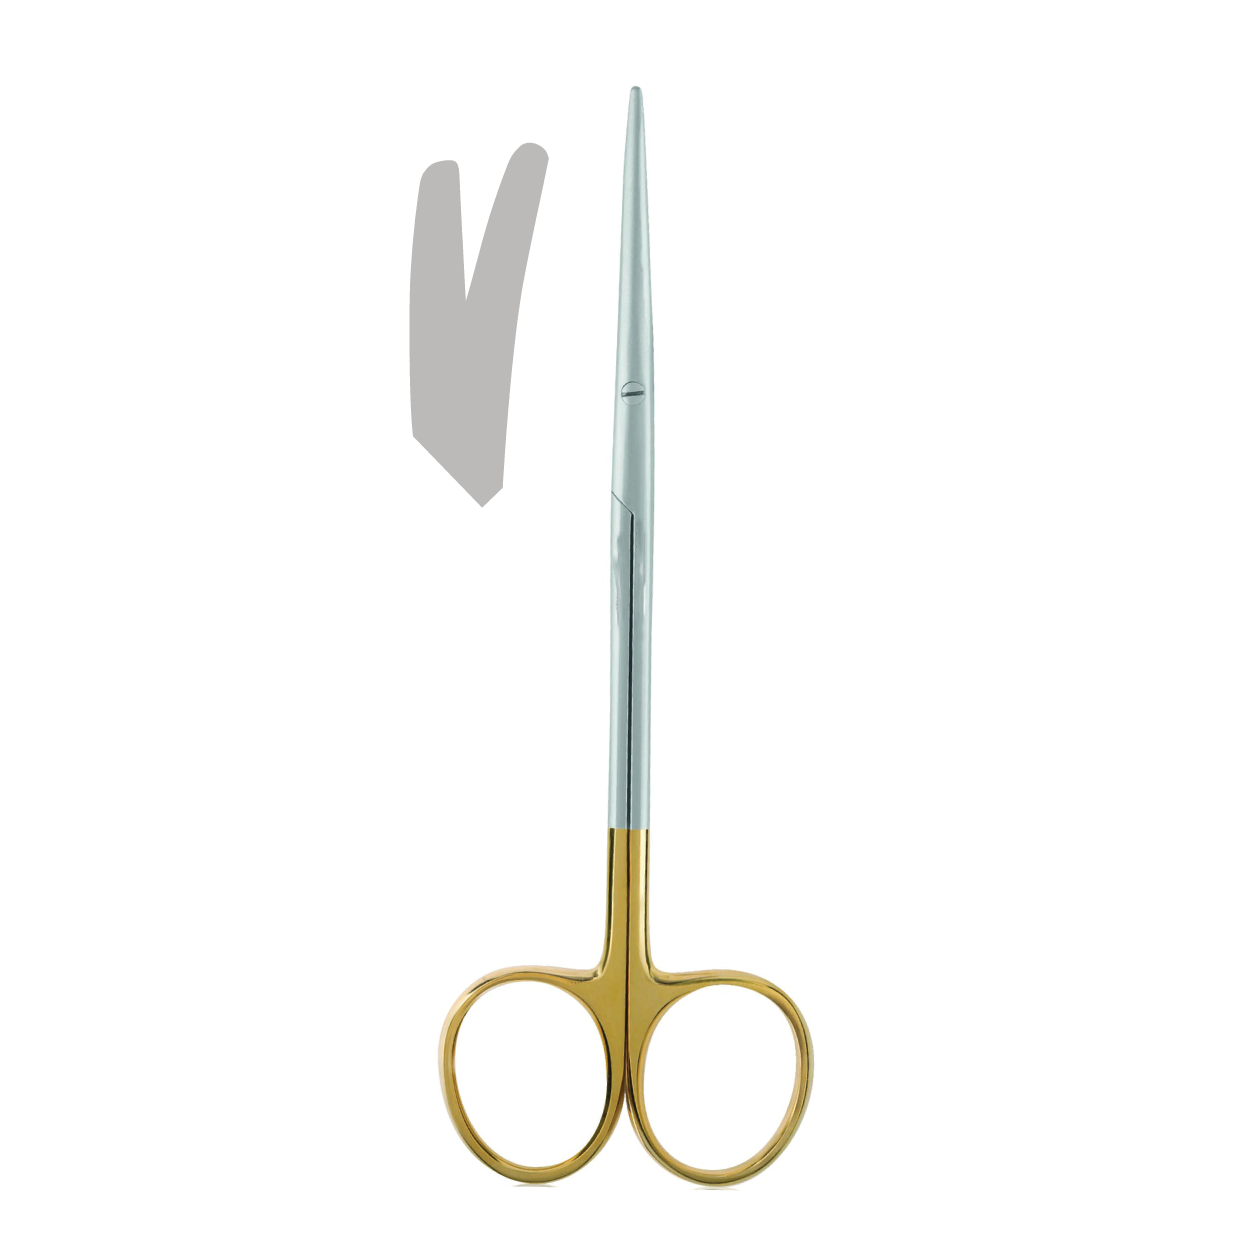 Metzenbaum Scissors, Precised, Curved, TC, 14.5cm (5.70")